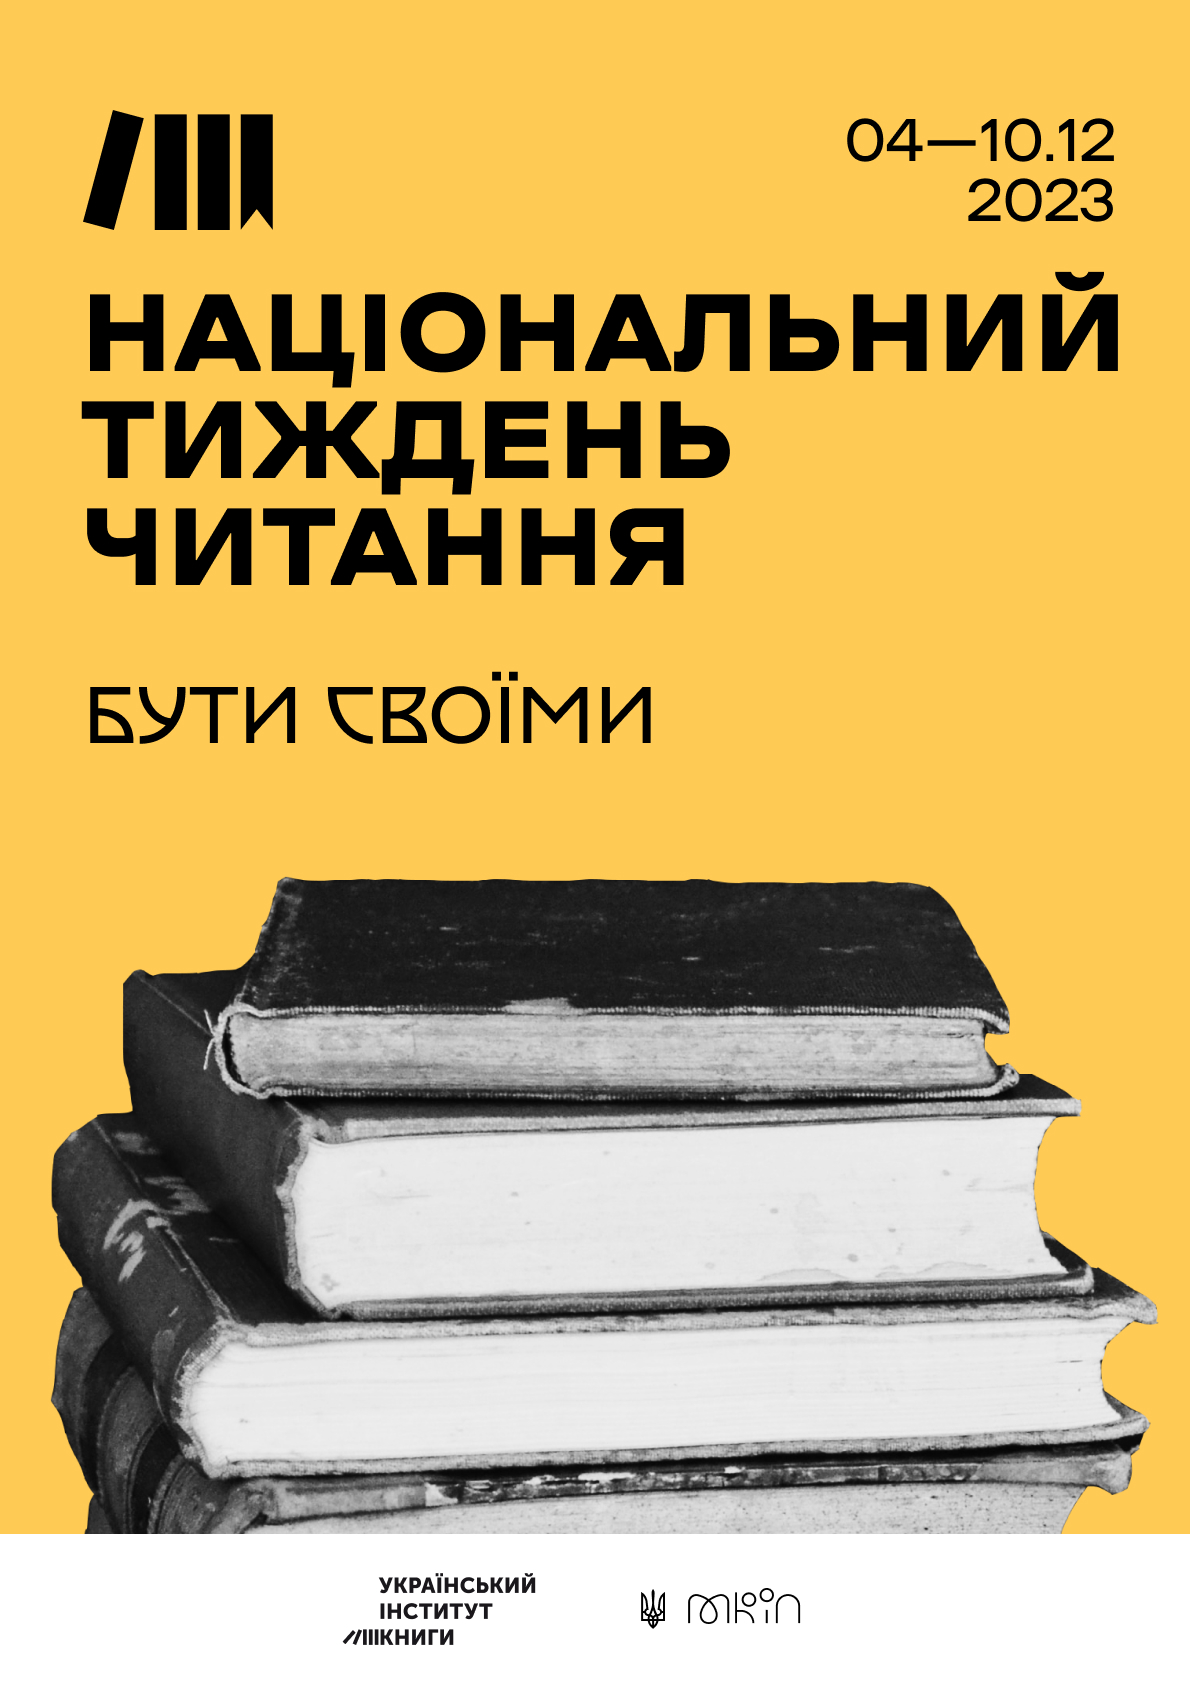 Всеукраїнська інформаційно-просвітницька тематична акція «Національний тиждень читання»